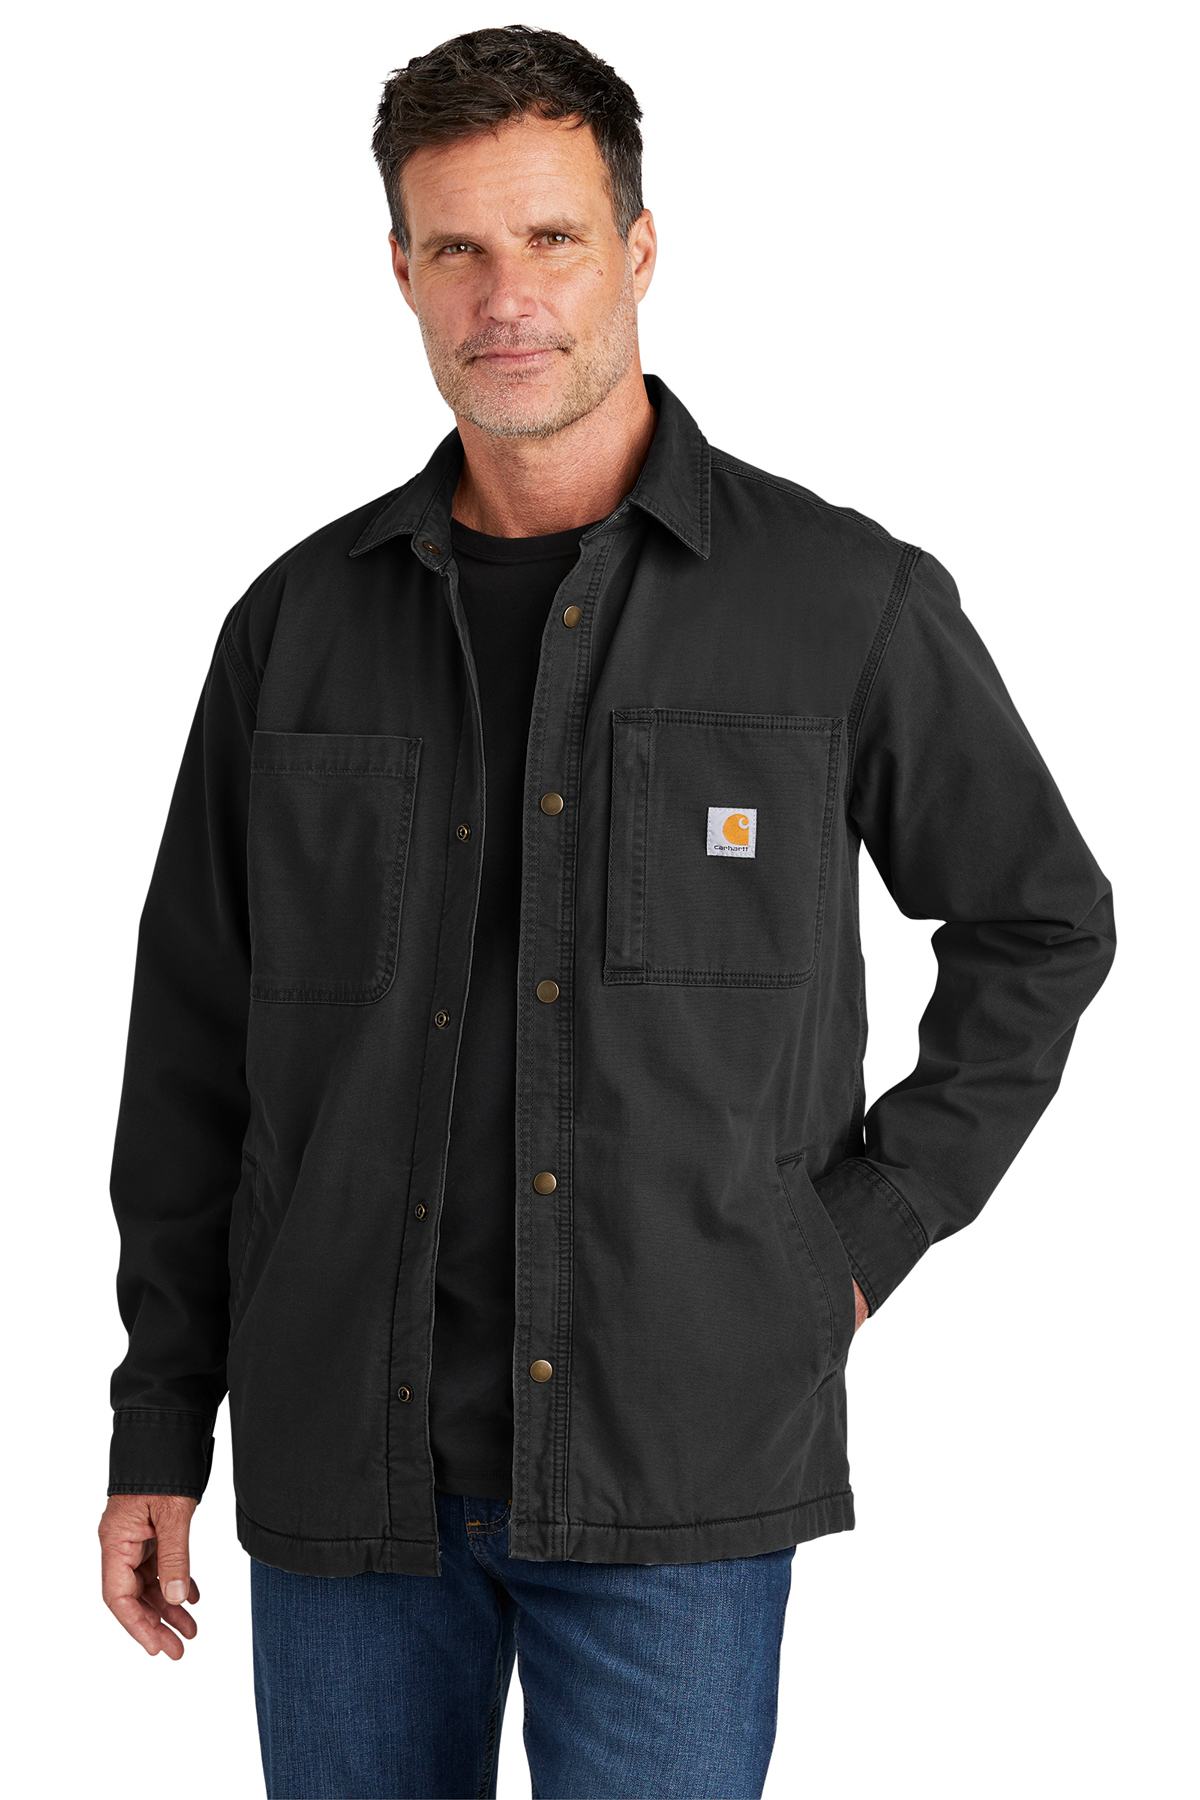 Carhartt® Rugged Flex® Fleece-Lined Shirt Jac